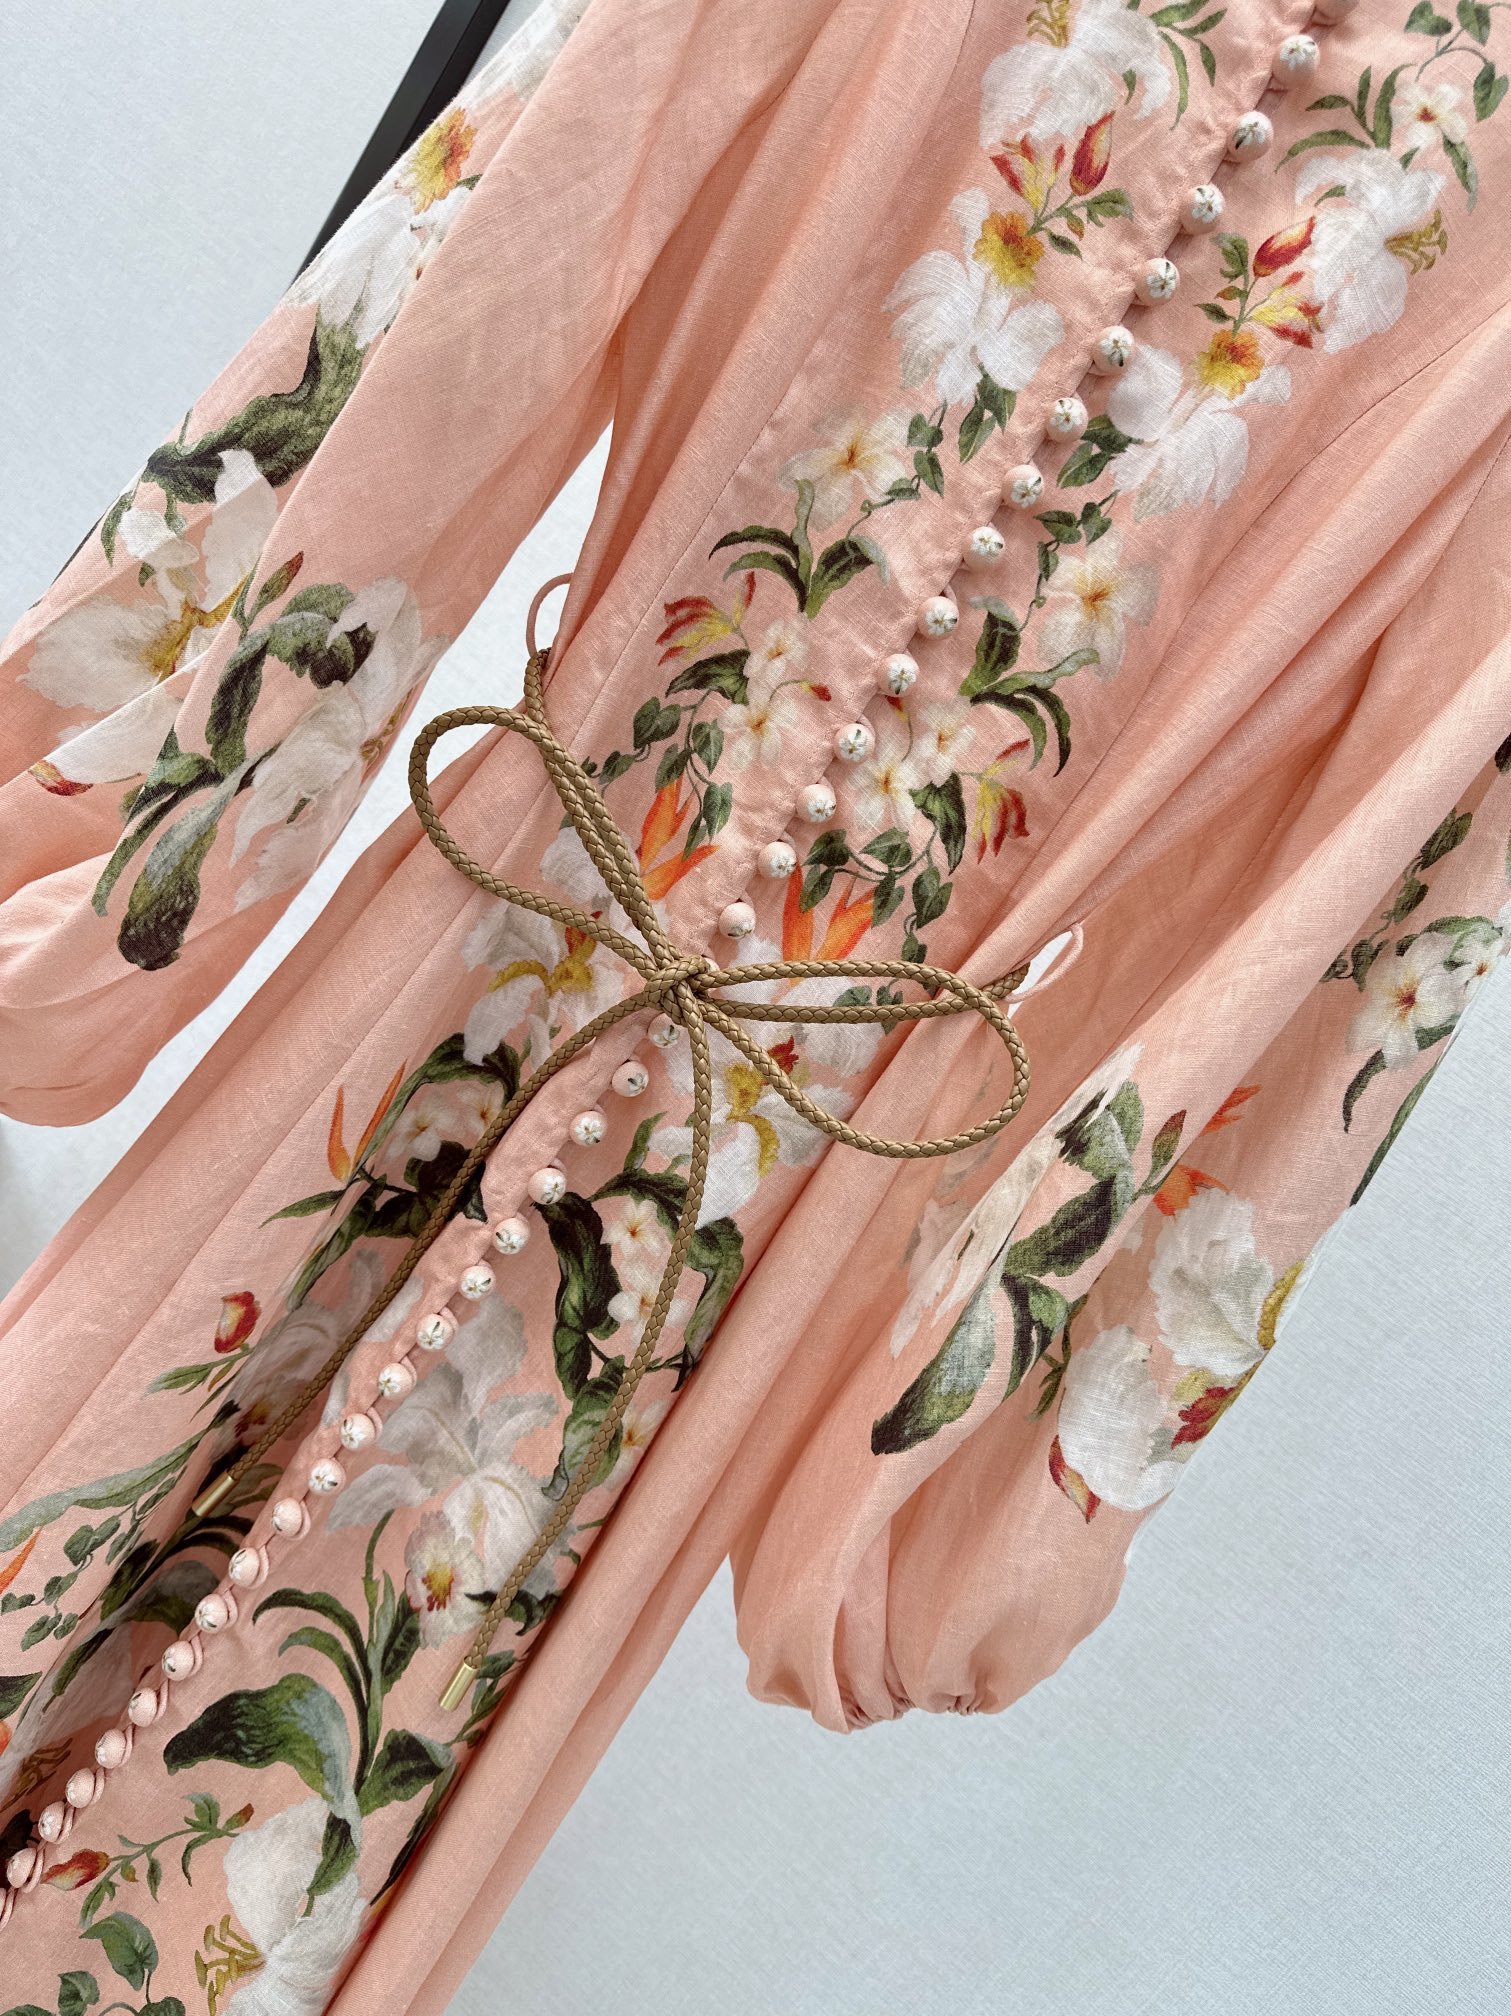 独家首发原单品质Zimmer-M24Ss早春最新款花卉图案亚麻长款连衣裙助你尽情释放女性魅力它以花卉印花